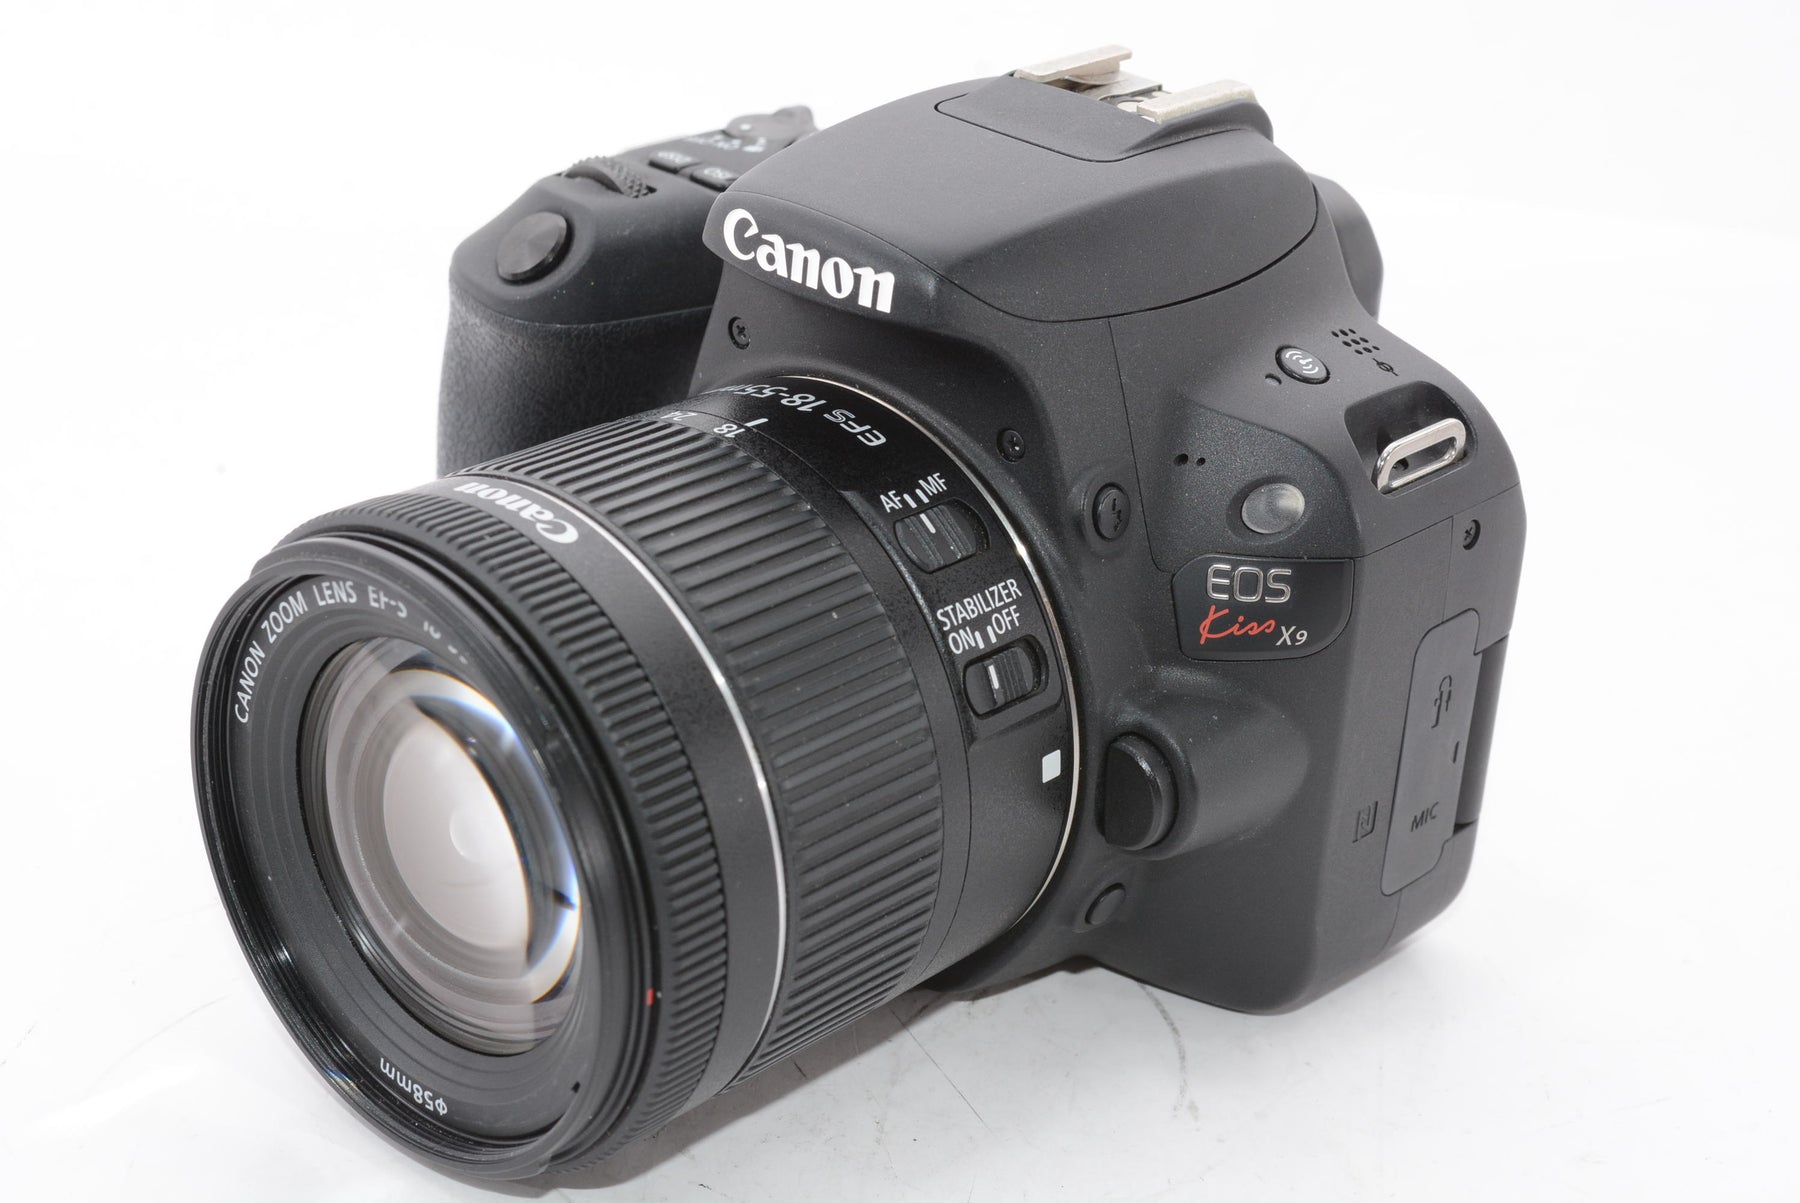 【外観特上級】Canon デジタル一眼レフカメラ EOS Kiss X9 EF-S18-55 IS STM レンズキット(ブラック) KISSX9BK1855F4ISSTML